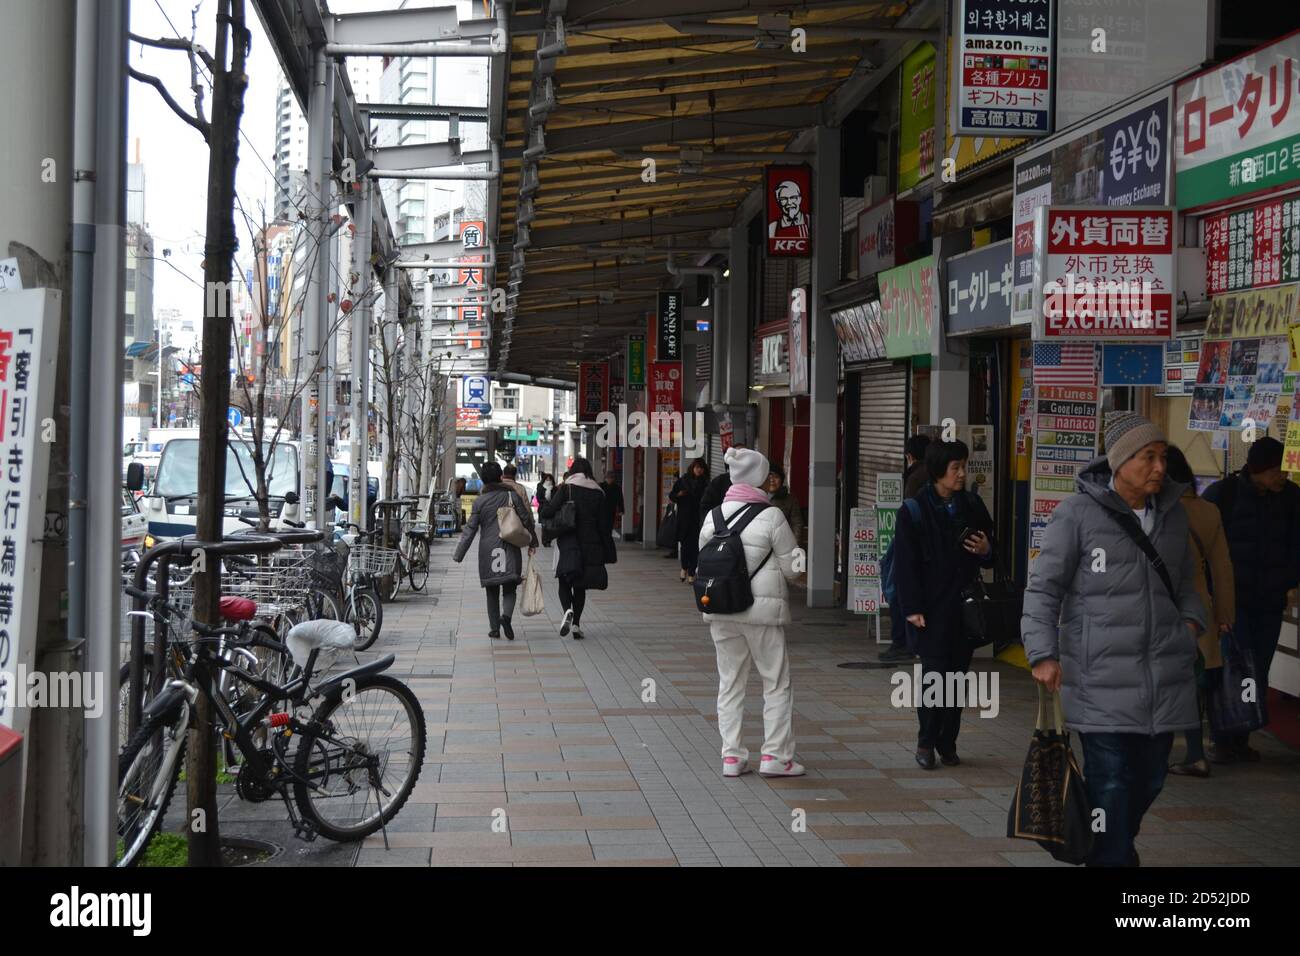 Tokio, Japón-2/24/16: Vida cotidiana en Tokio, gente caminando por las calles haciendo varias cosas; a la derecha vemos múltiples tiendas, restaurantes, etc. Foto de stock